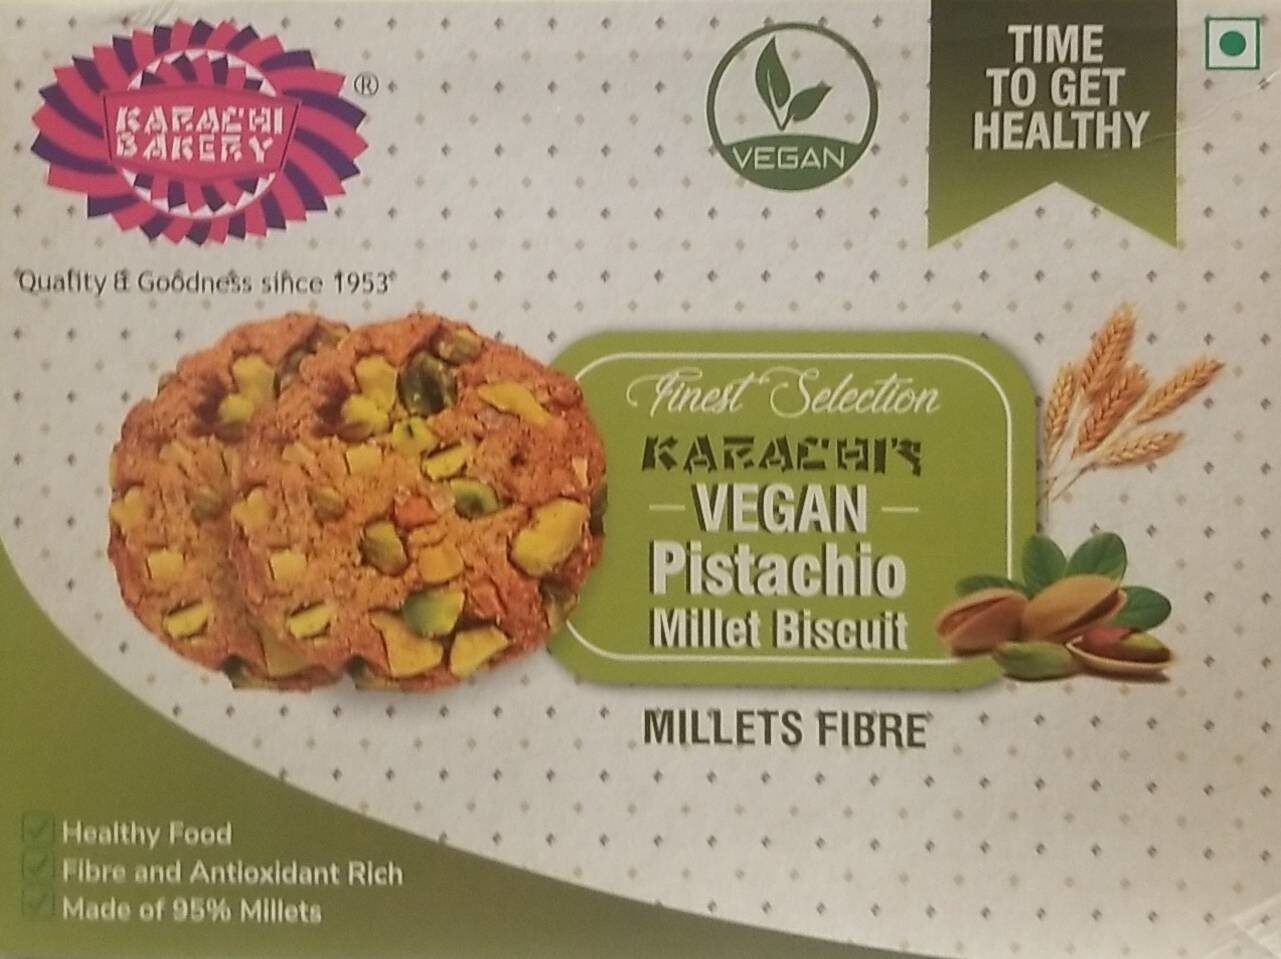 Vegan Pistachio Millet Biscuit - Product